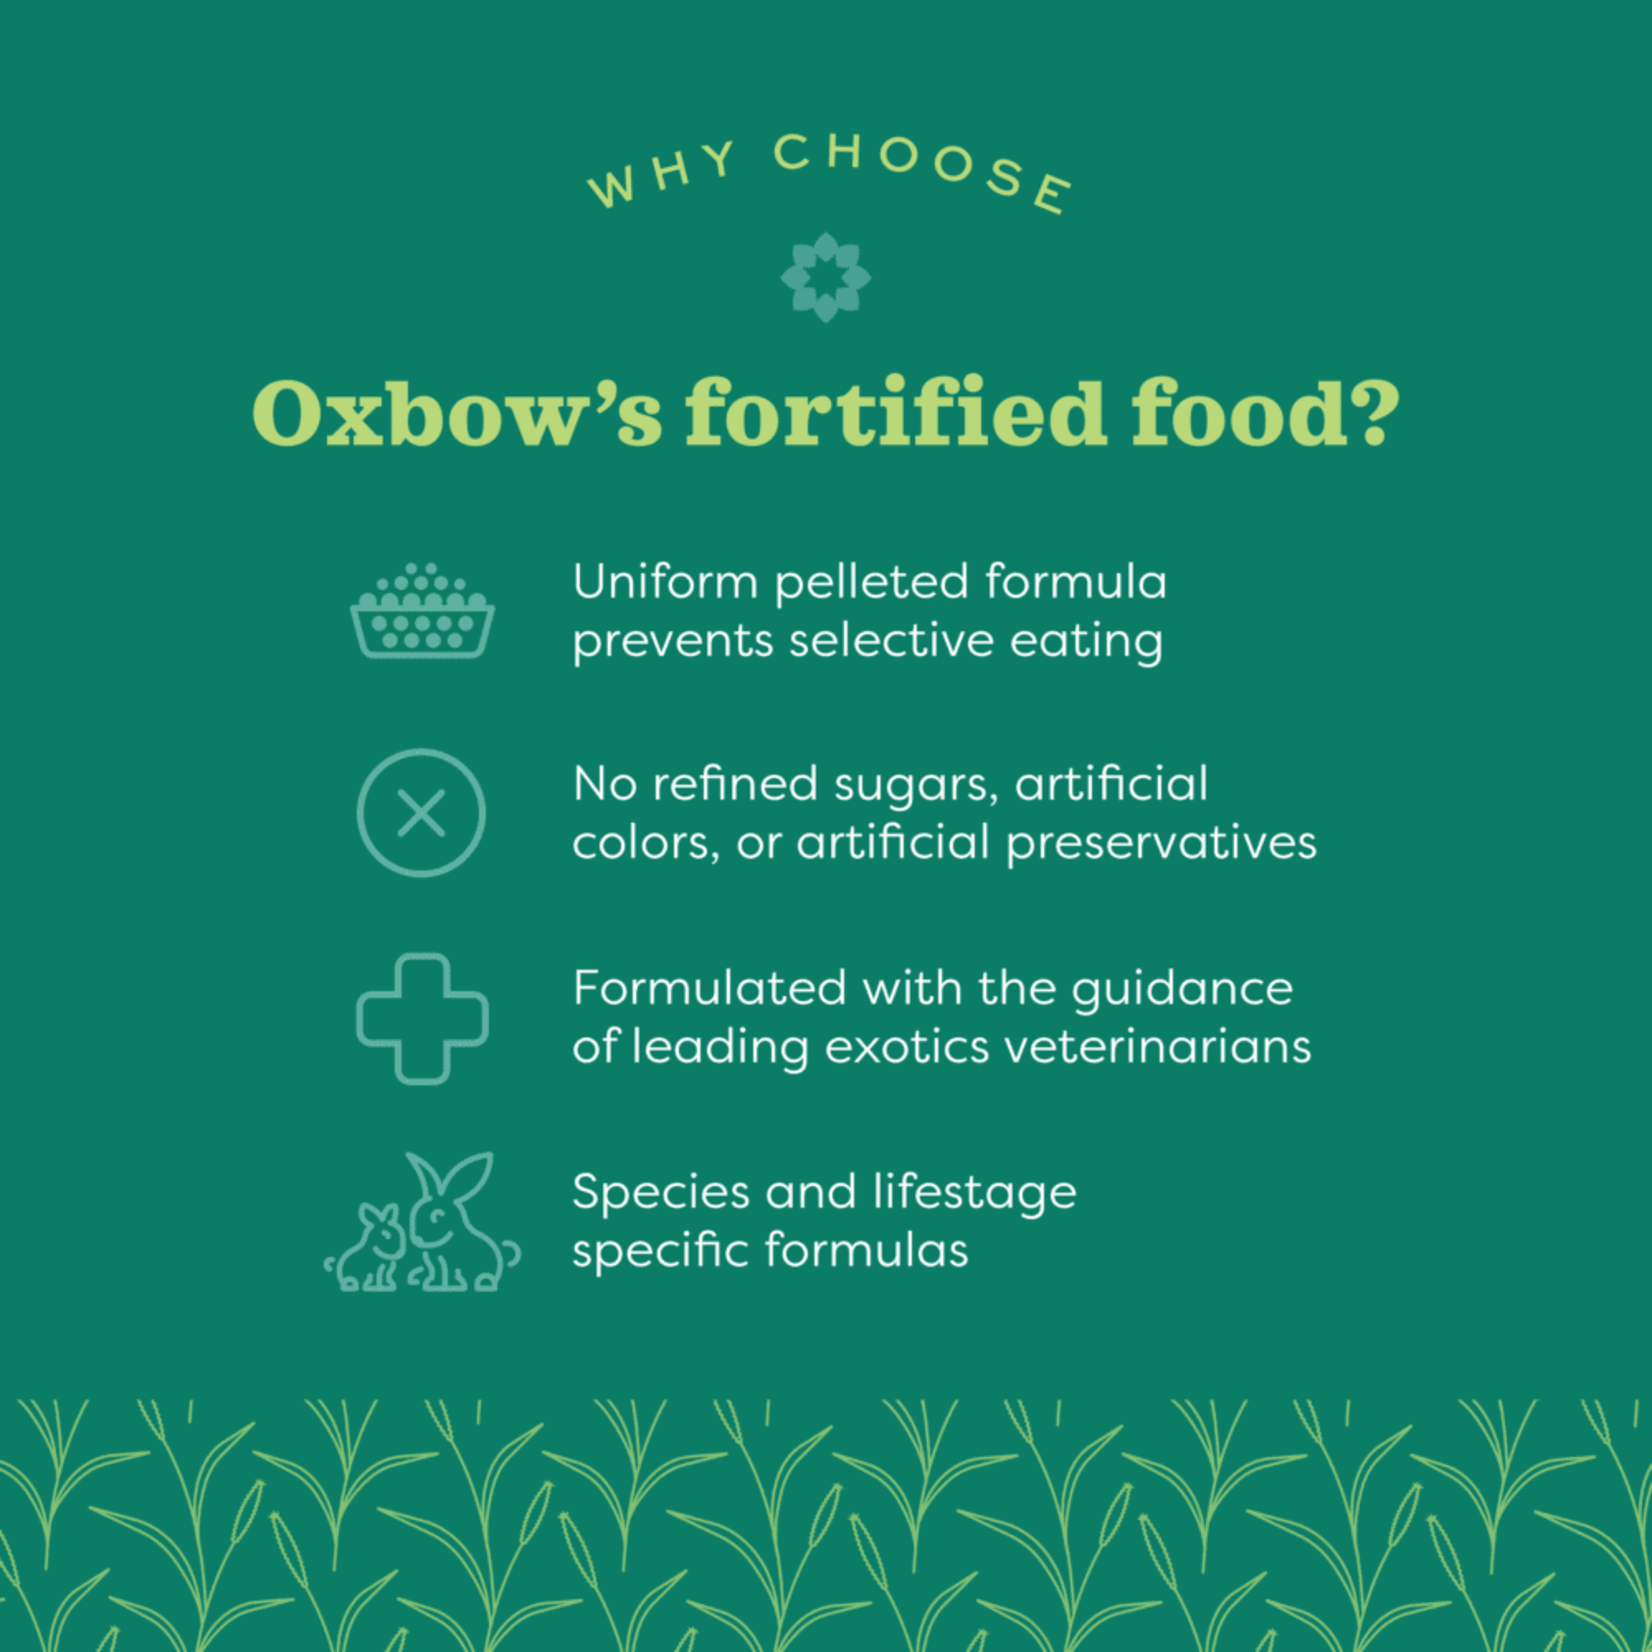 Oxbow Animal Health Essentials Adult Rabbit Food